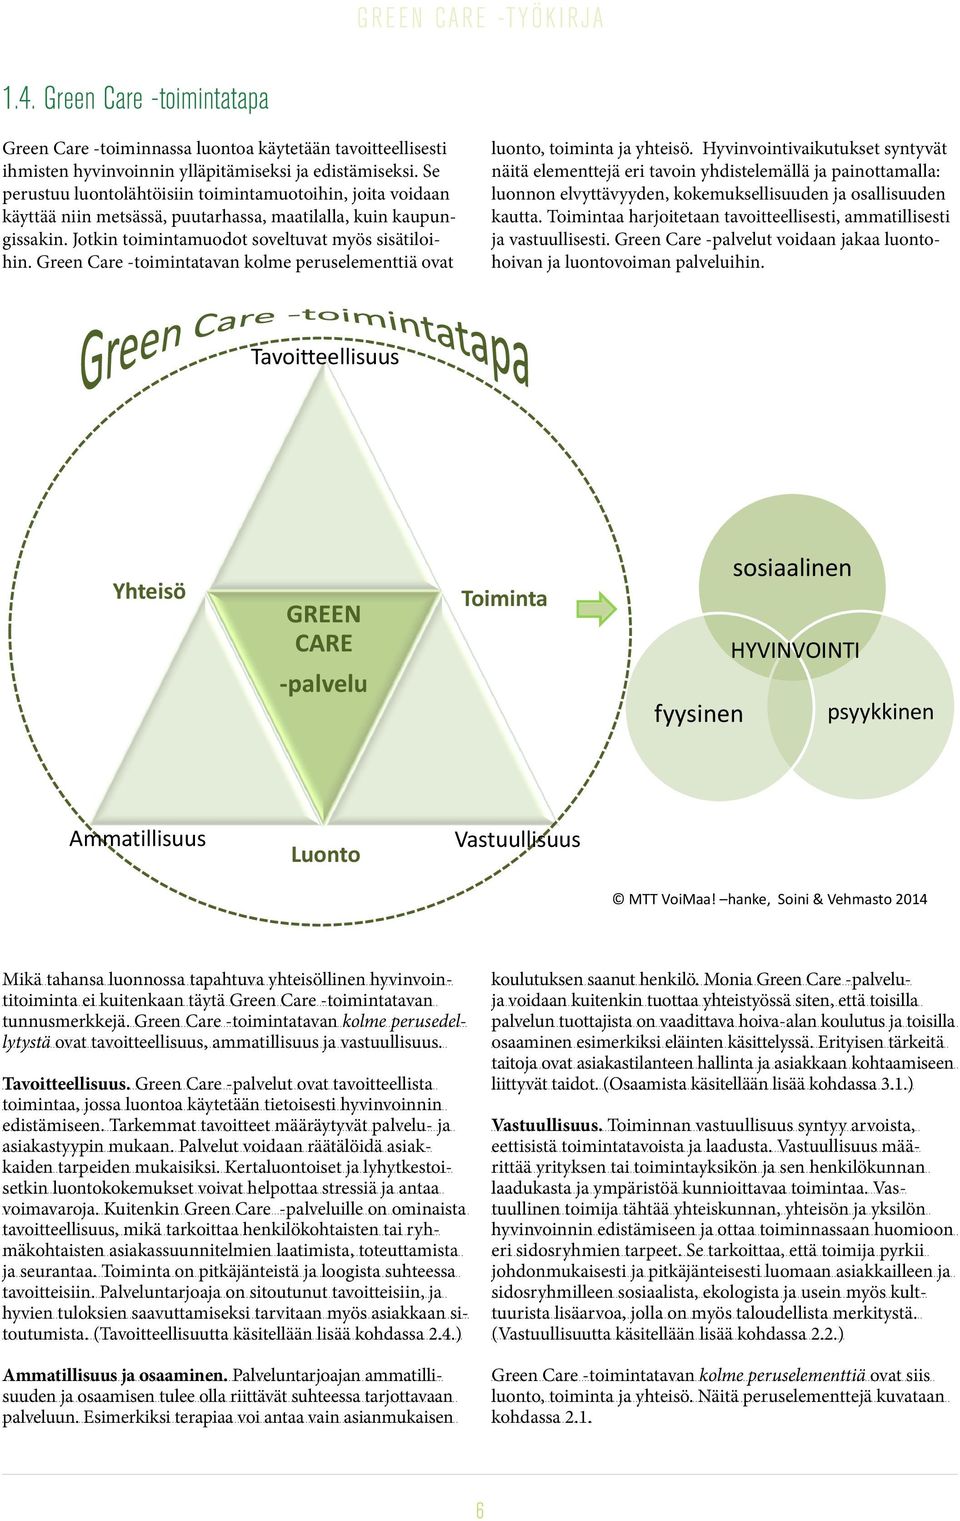 Green Care -toimintatavan kolme peruselementtiä ovat luonto, toiminta ja yhteisö.